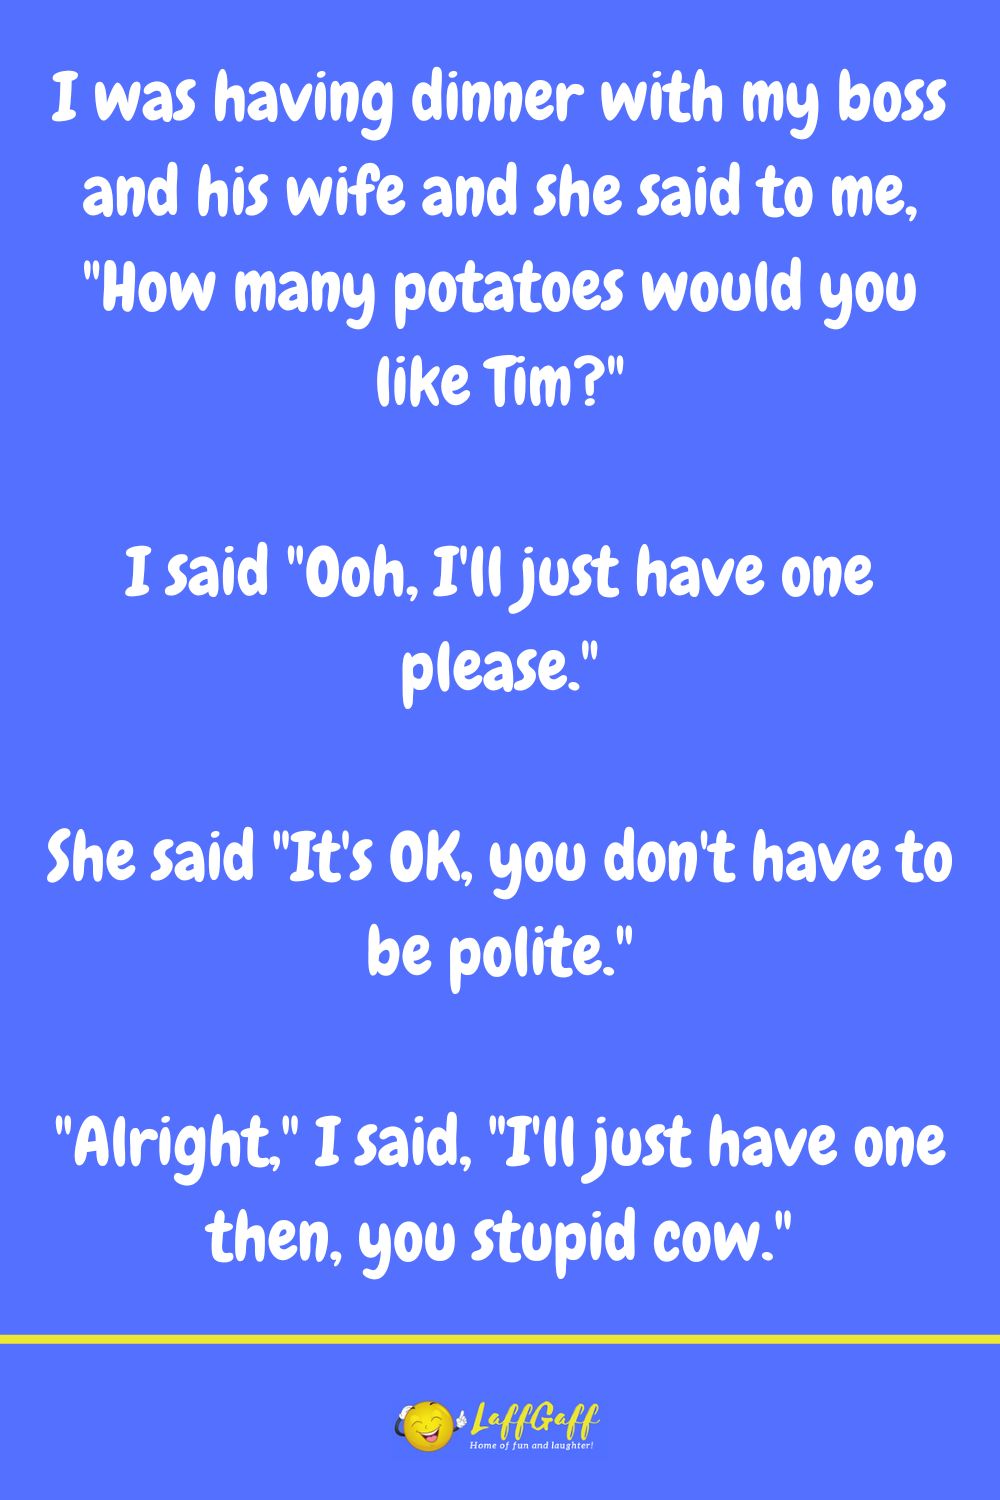 Just one potato joke from LaffGaff.